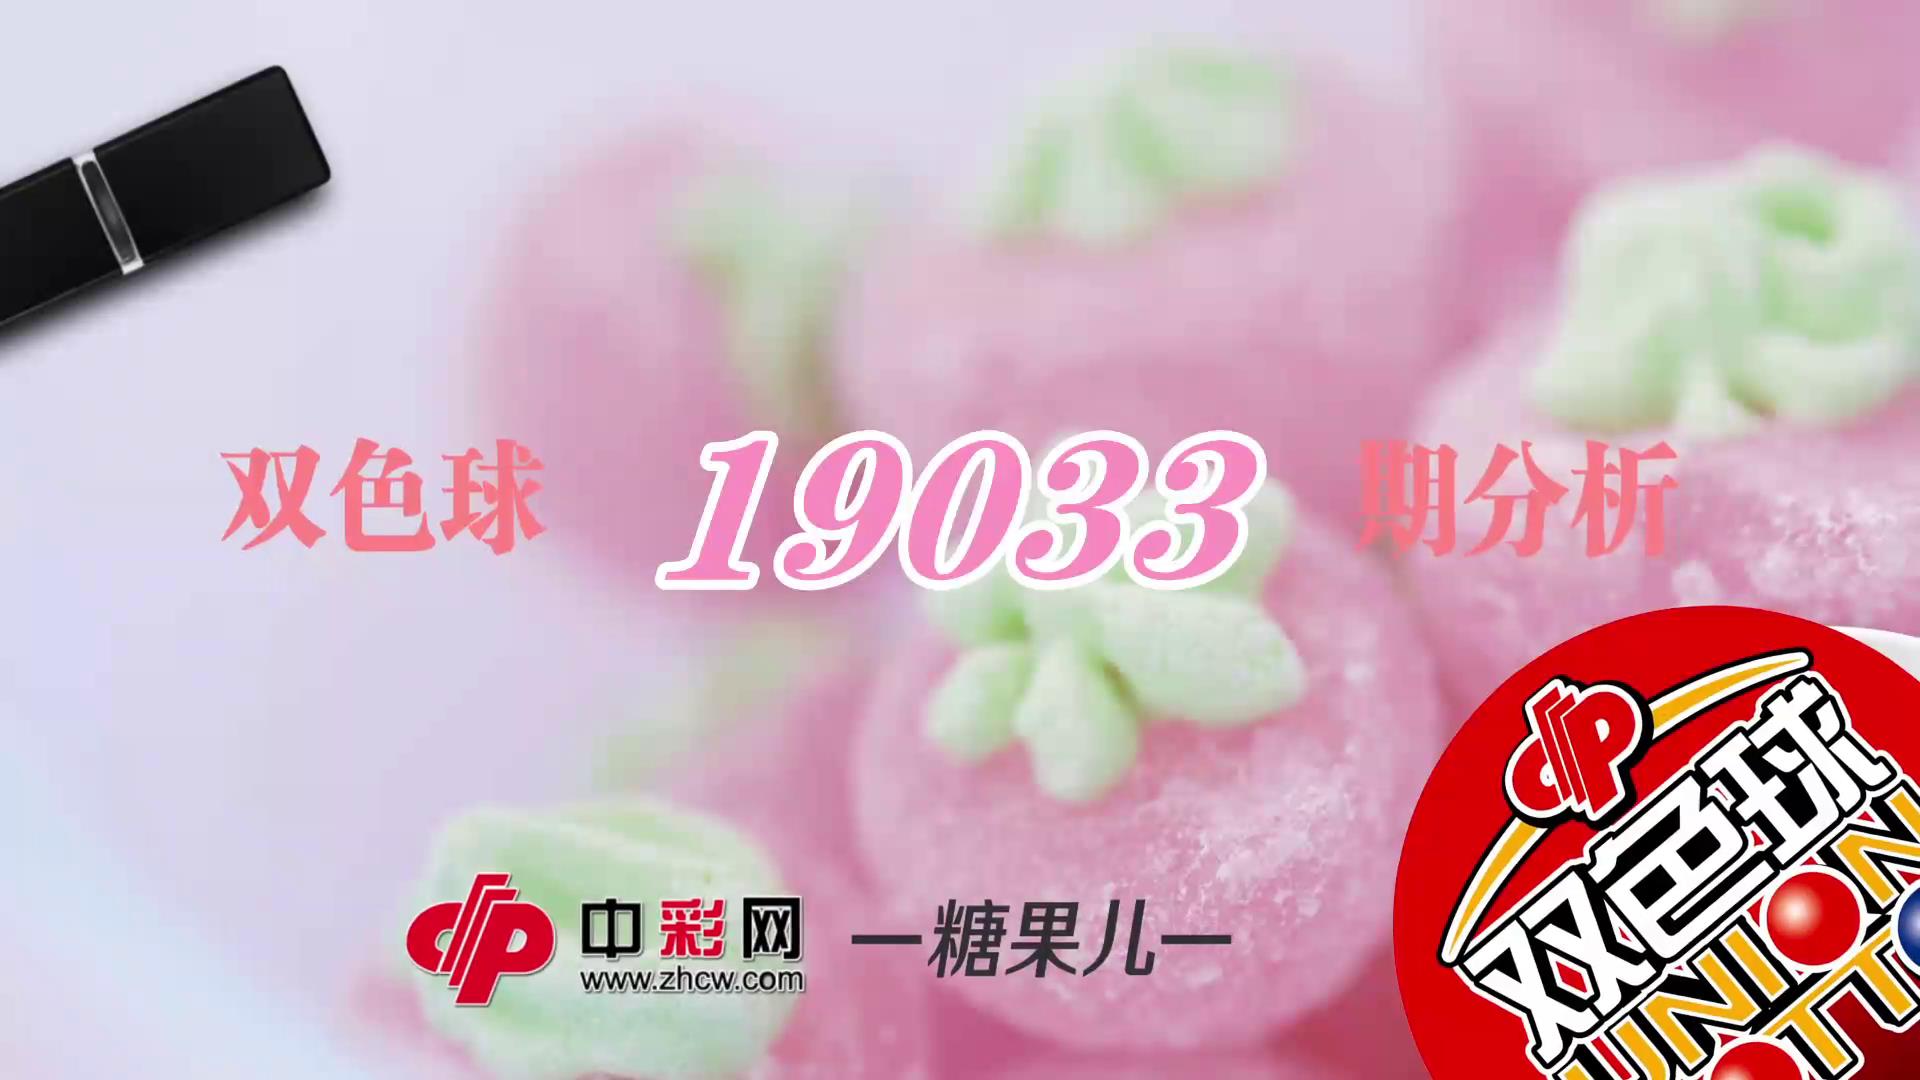 【中彩视频】糖果儿双色球第19033期